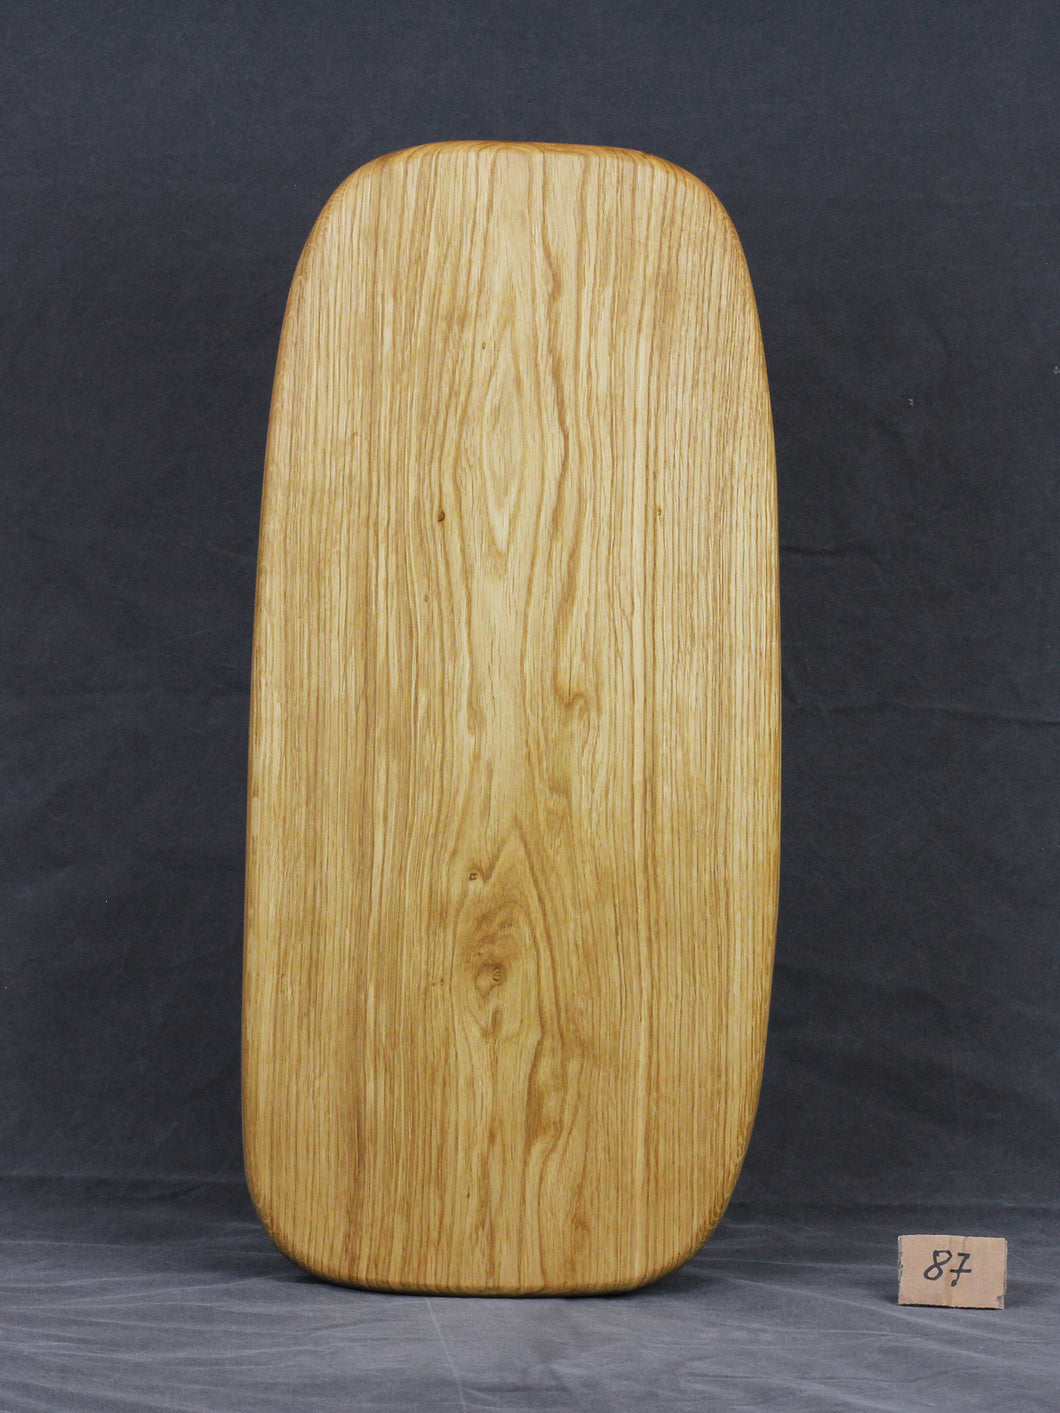 Brotzeitbrett, Servierbrett, Schneidebrett, Cuttingboard, Charcuterie Board. No. 87 - ca. 60 cm. Aus einem Stück Eiche - handgefertigt.